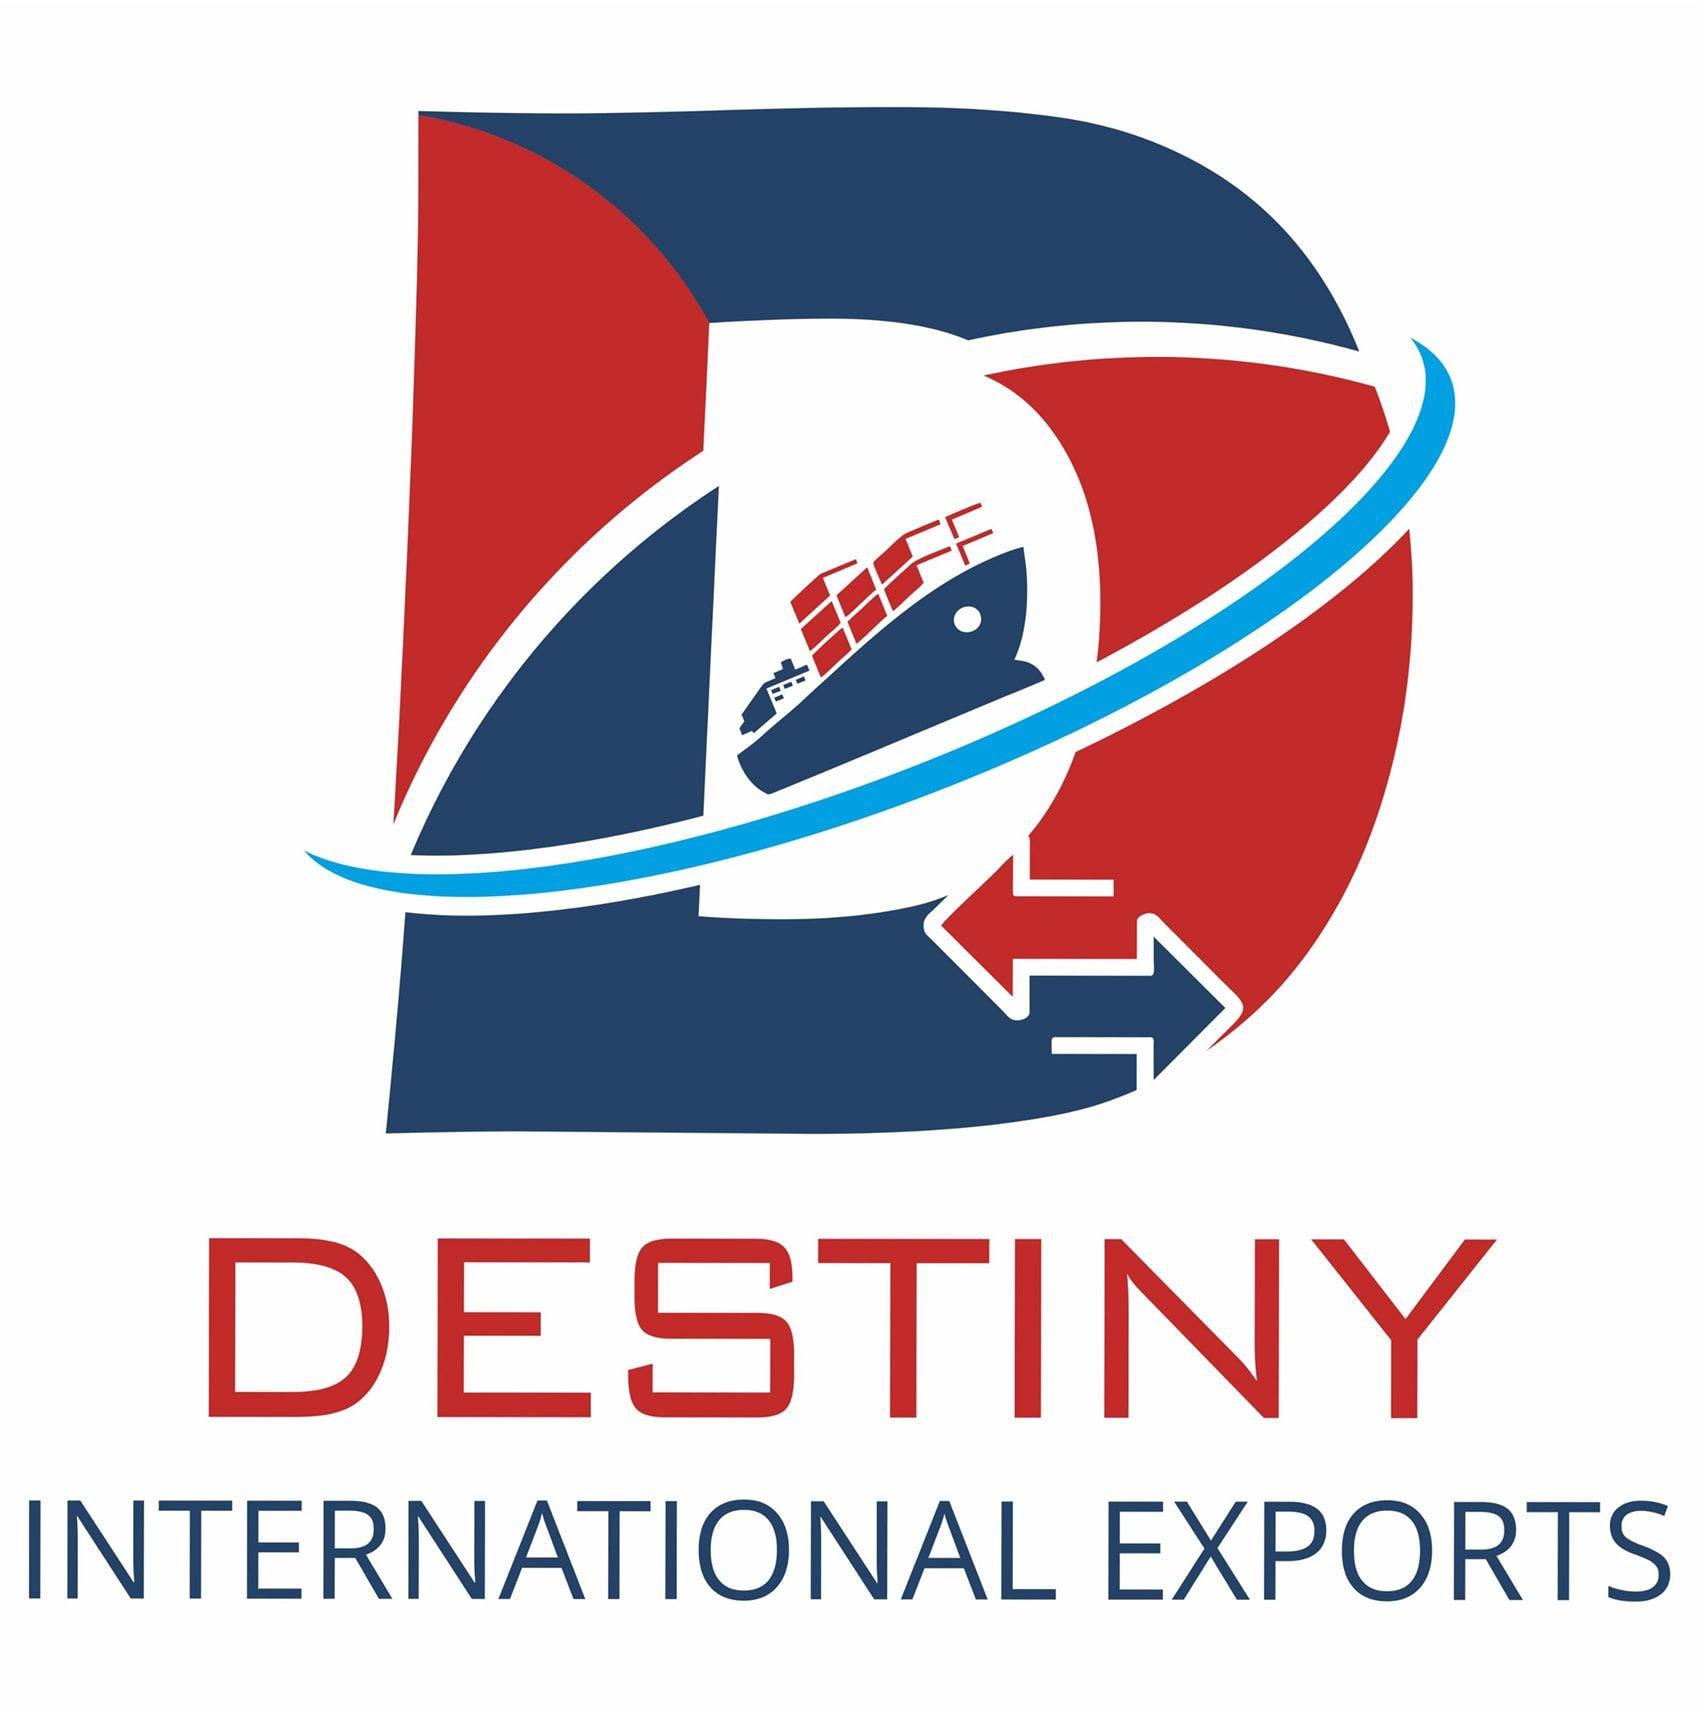 Destiny International Exports